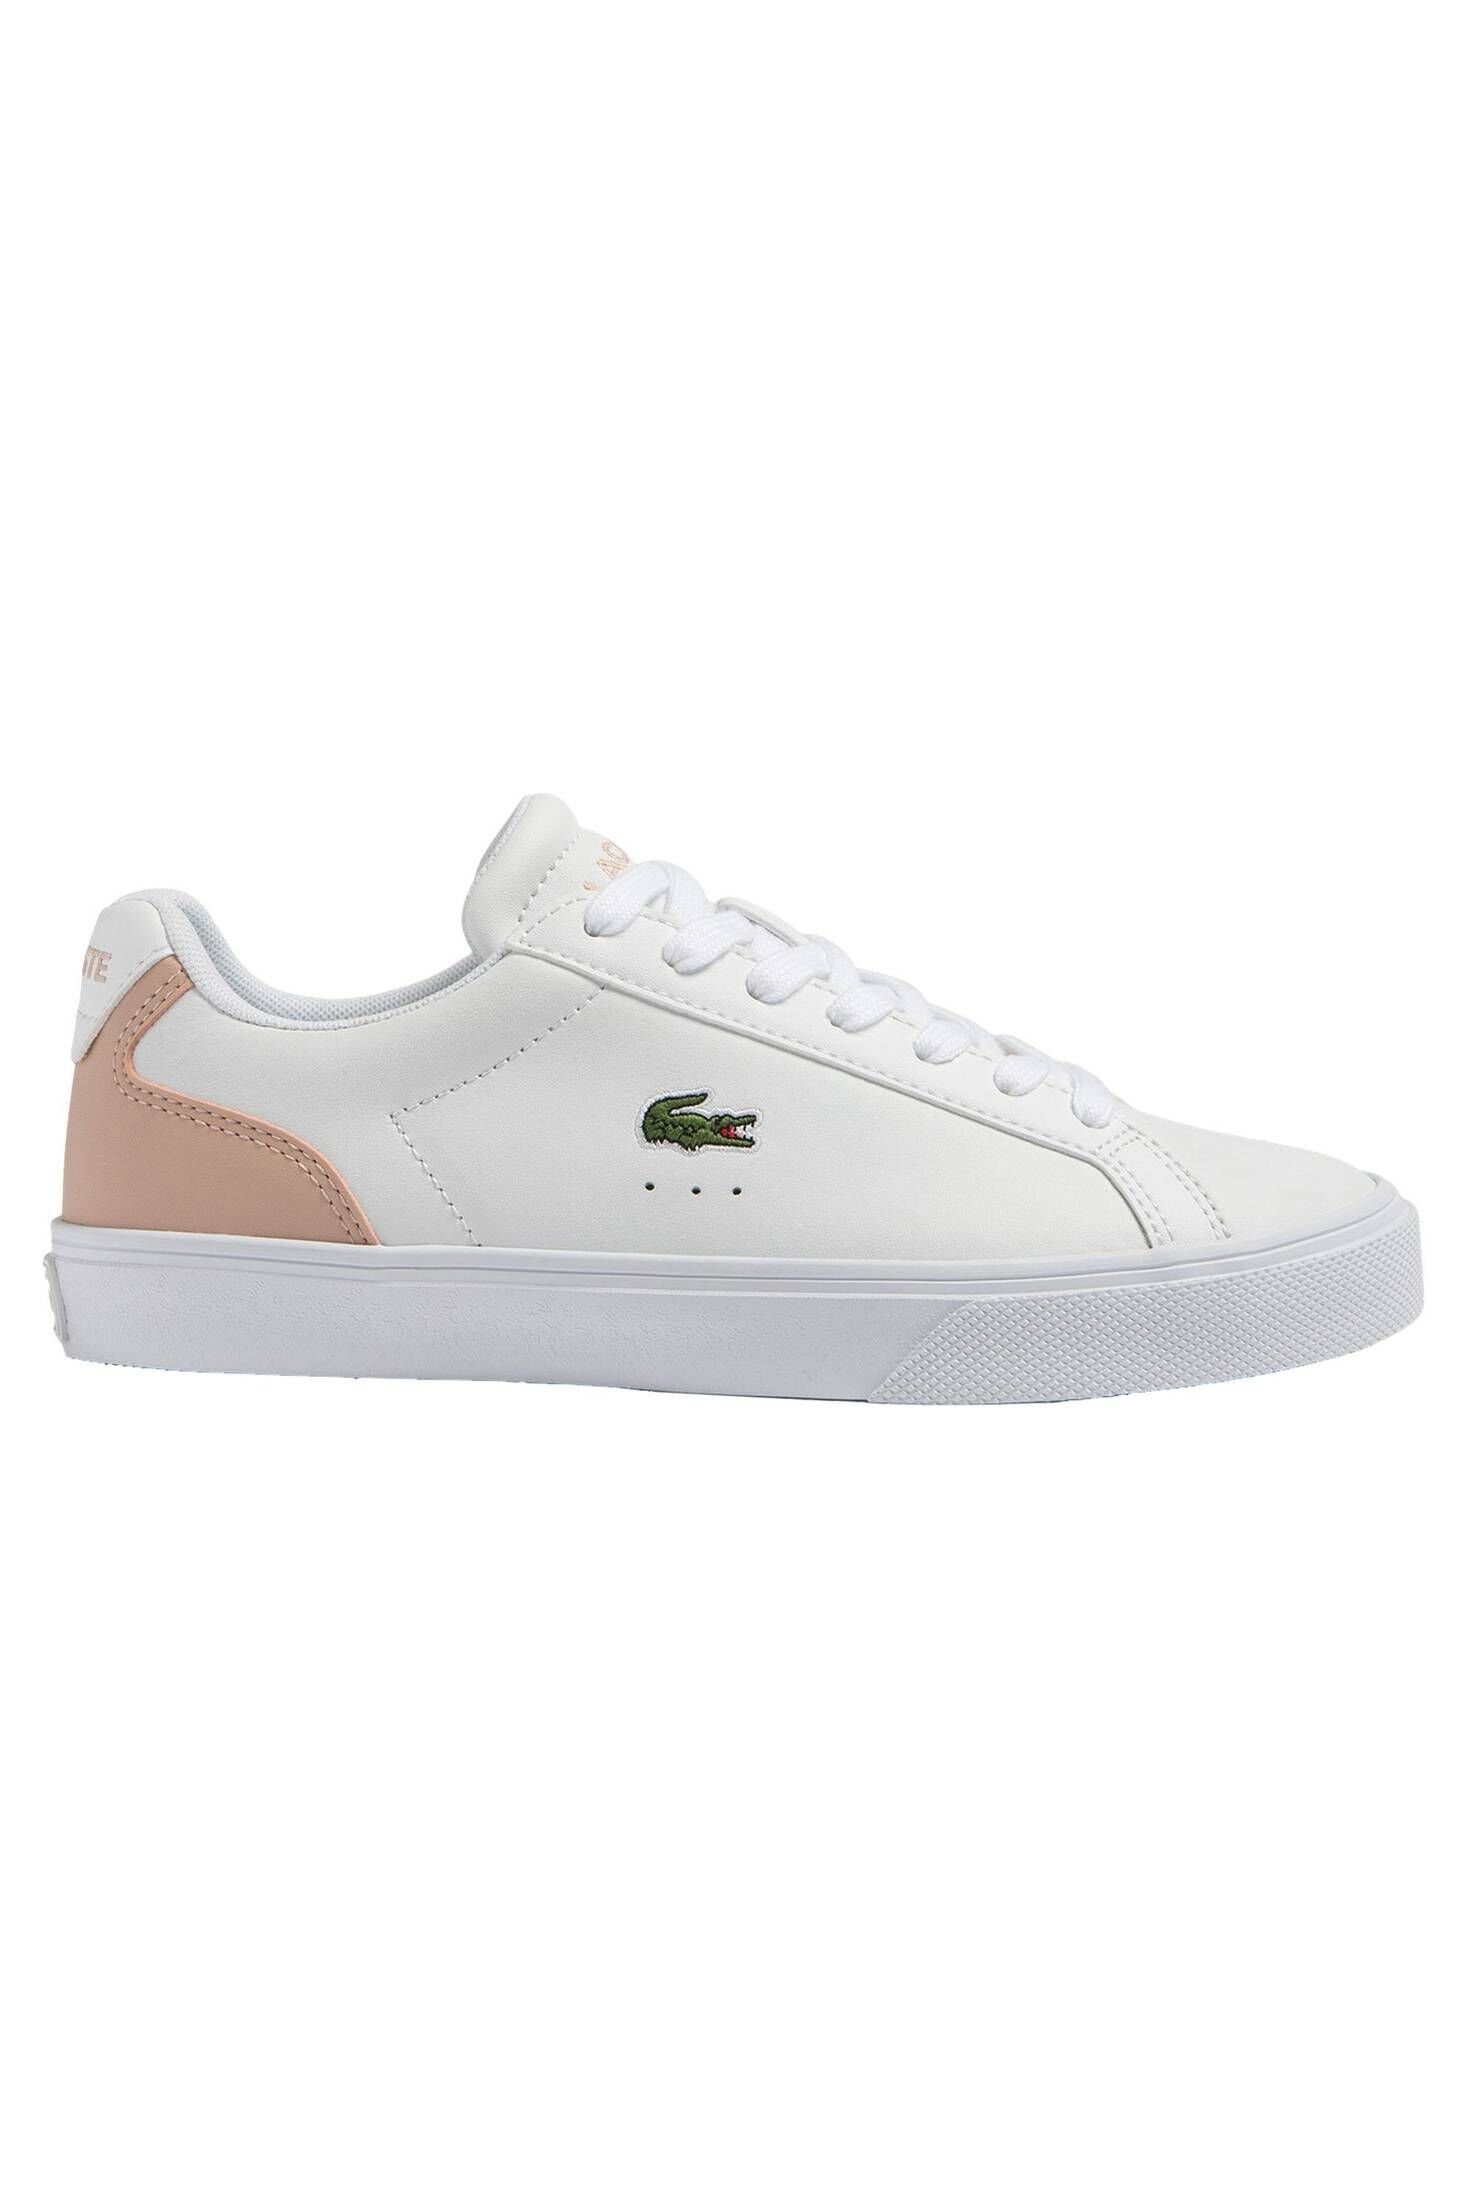 Lacoste Damen Sneaker LEROND PRO BASELINE LEATHER Sneaker weiss/rosa (982)